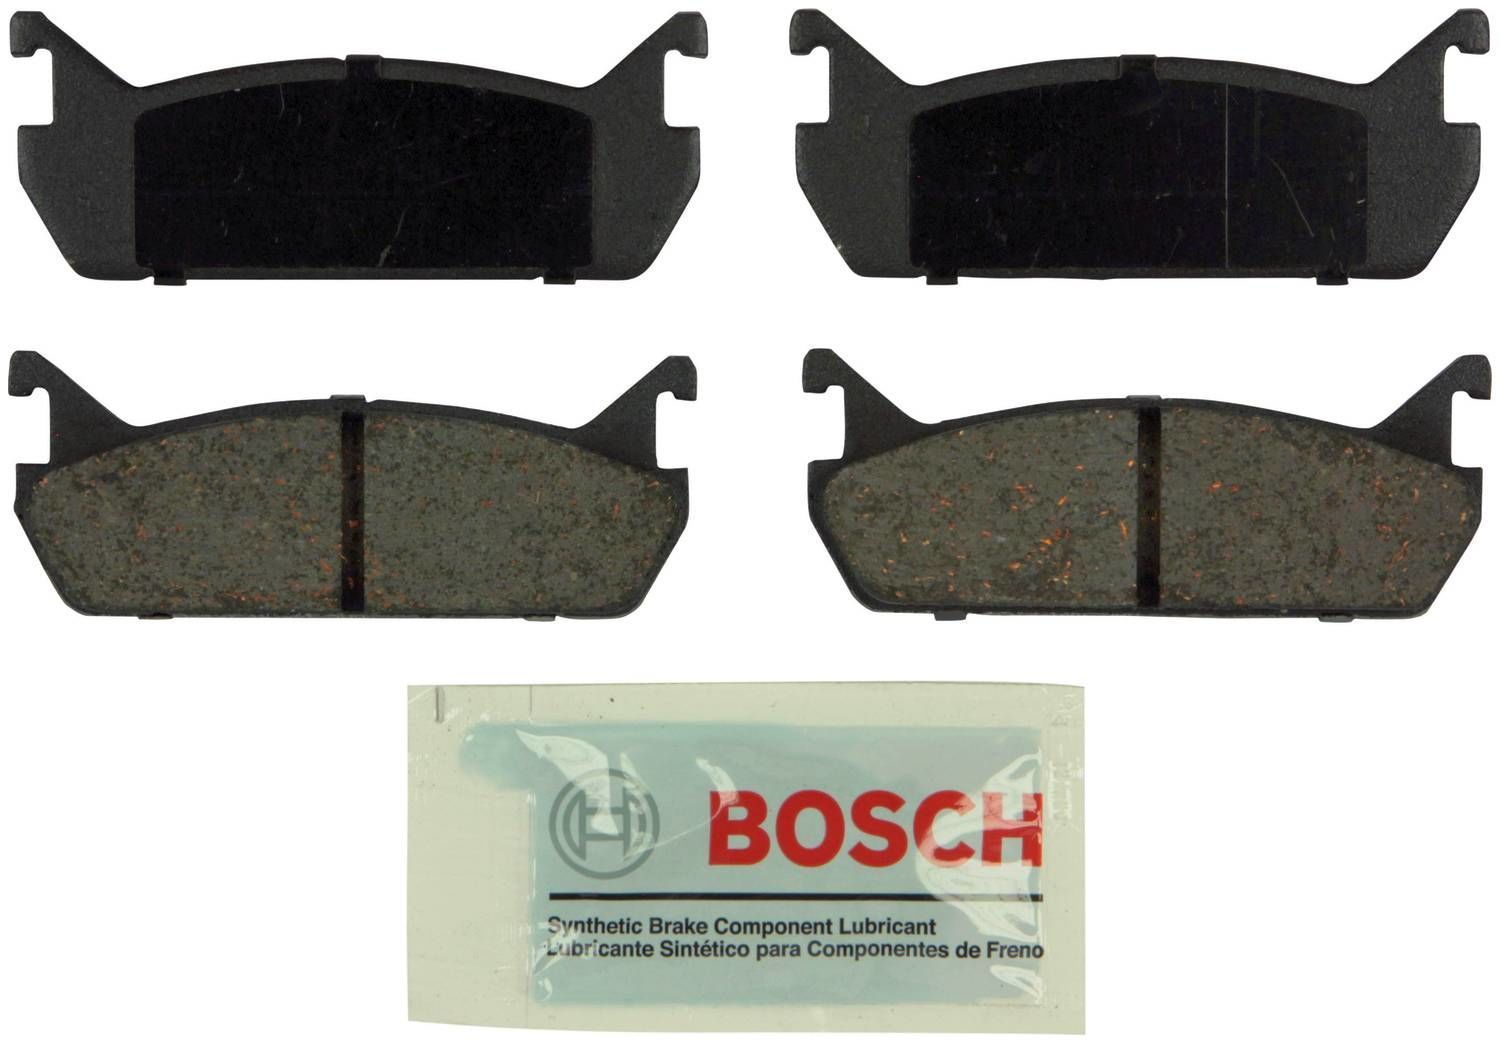 BOSCH BRAKE - Bosch Blue Ceramic Brake Pads - BQC BE458